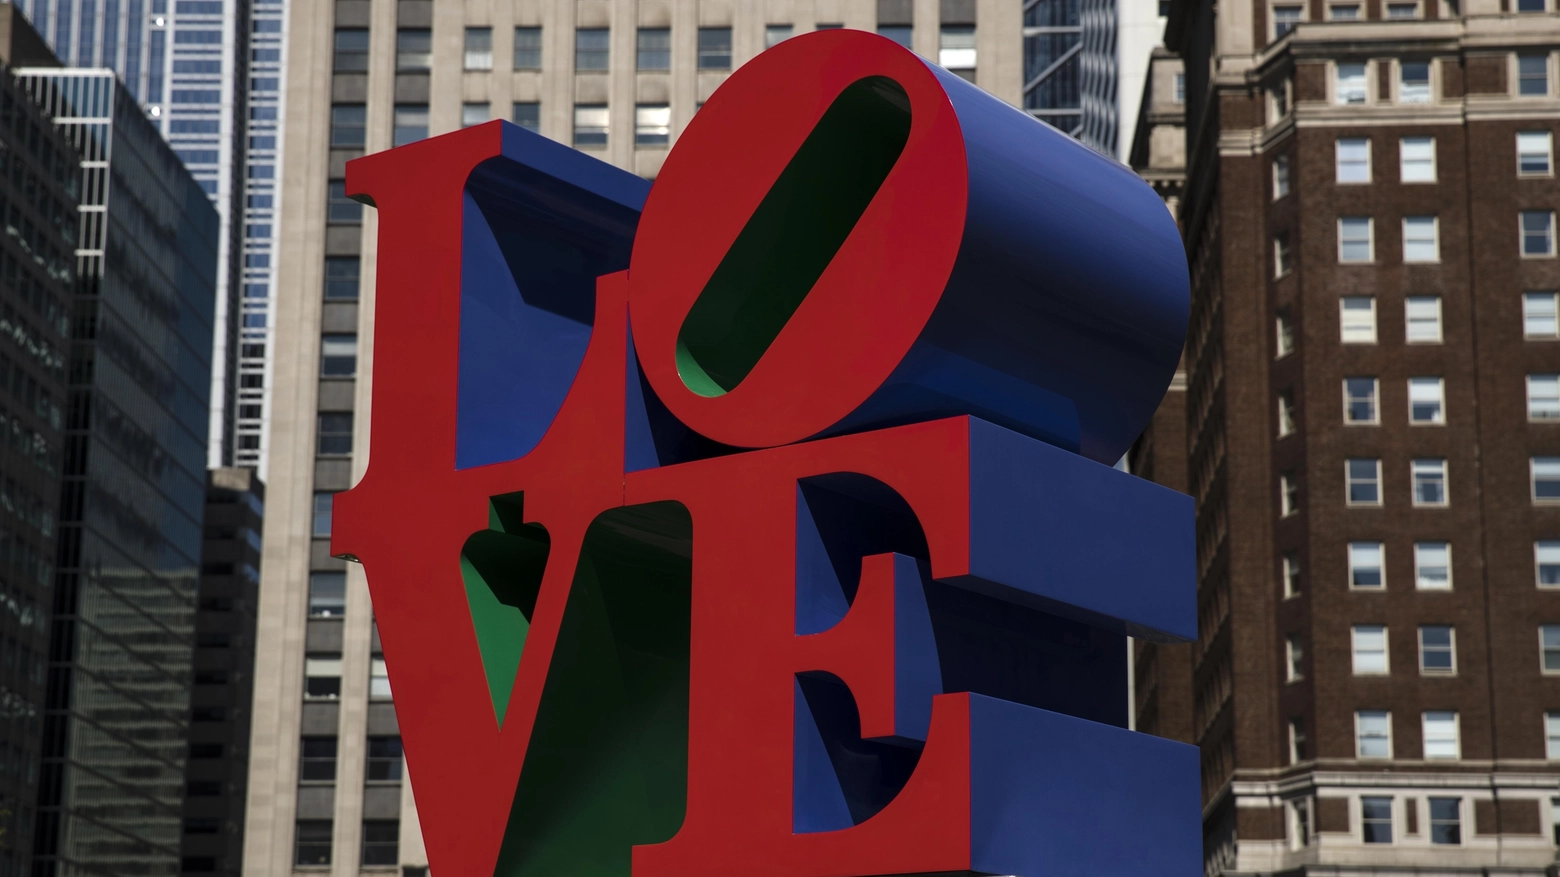 Una scultura della serie "Love" di Robert Indiana